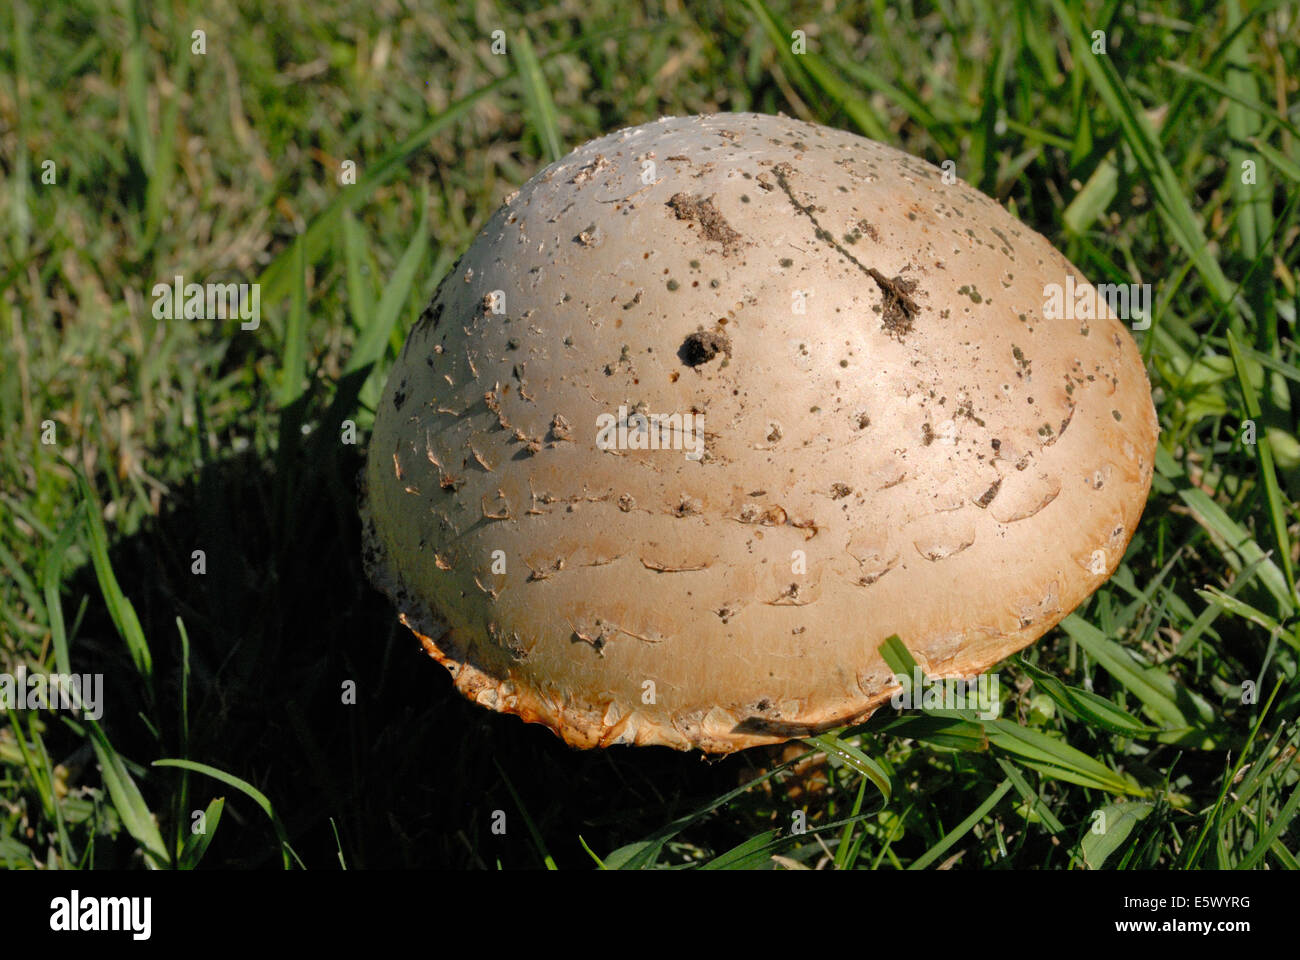 Shaggy mushroom Stock Photo